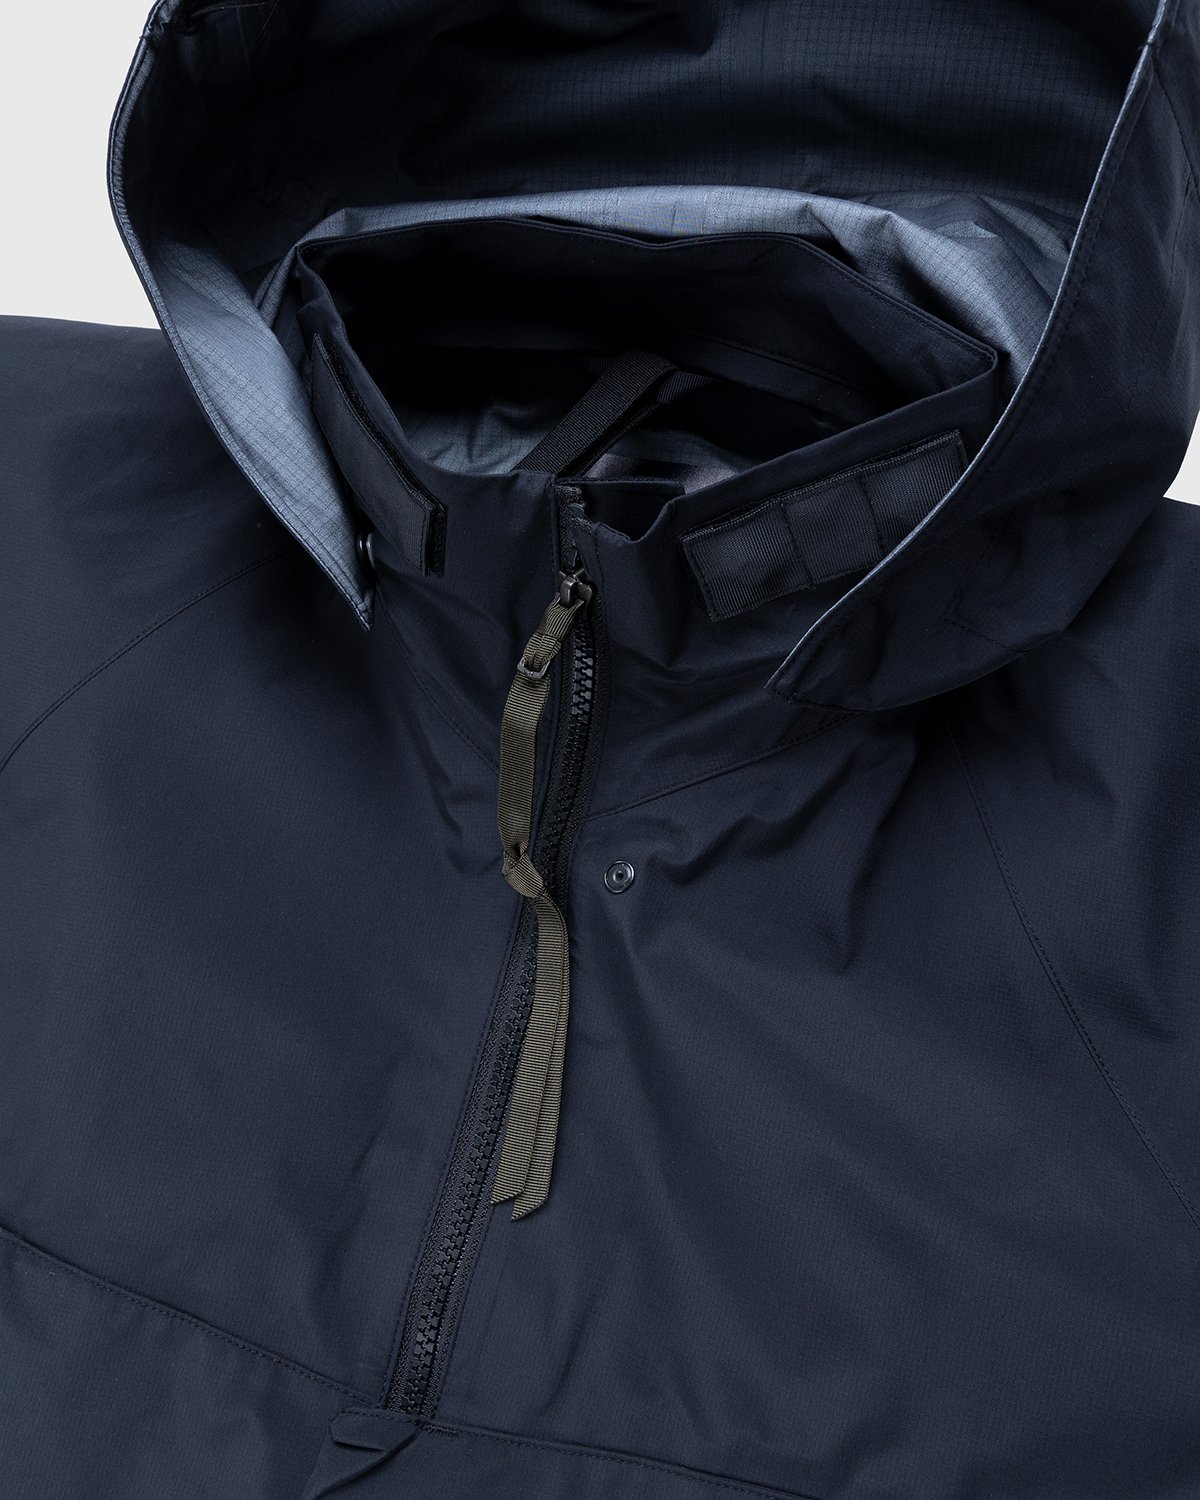 ACRONYM - J96-GT Jacket Black - Clothing - Black - Image 5